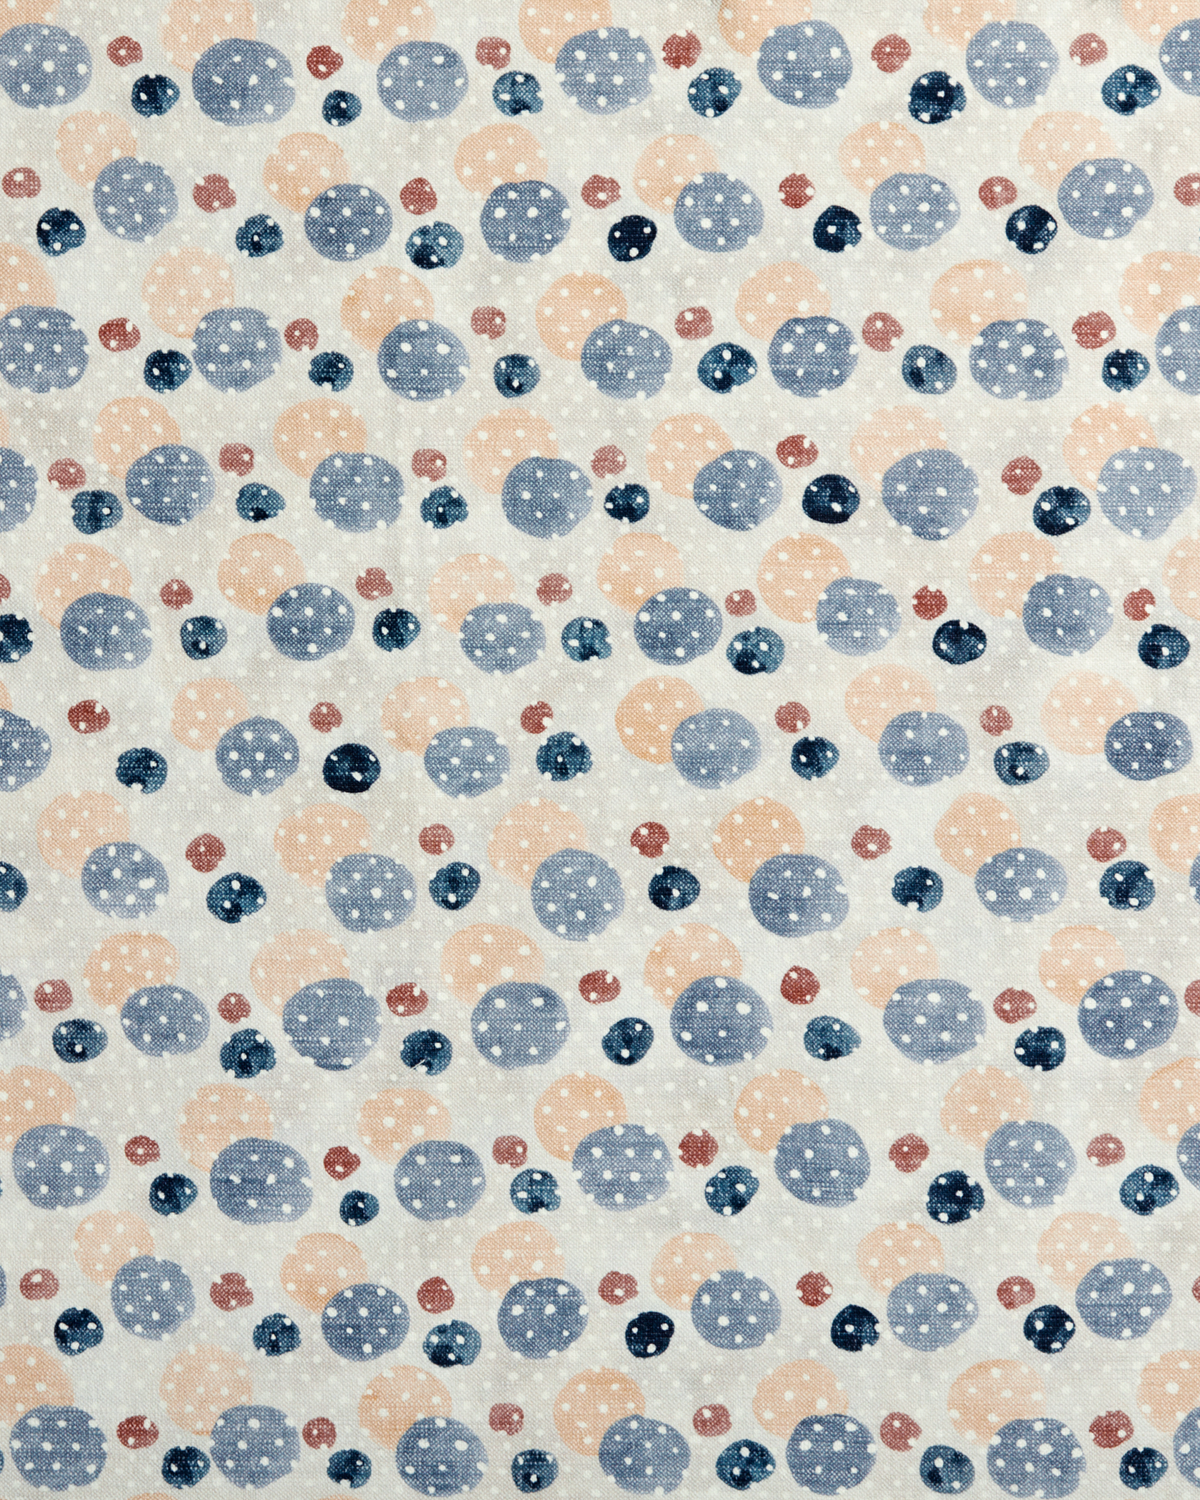 Dobler Dot Fabric in Peach/Blue